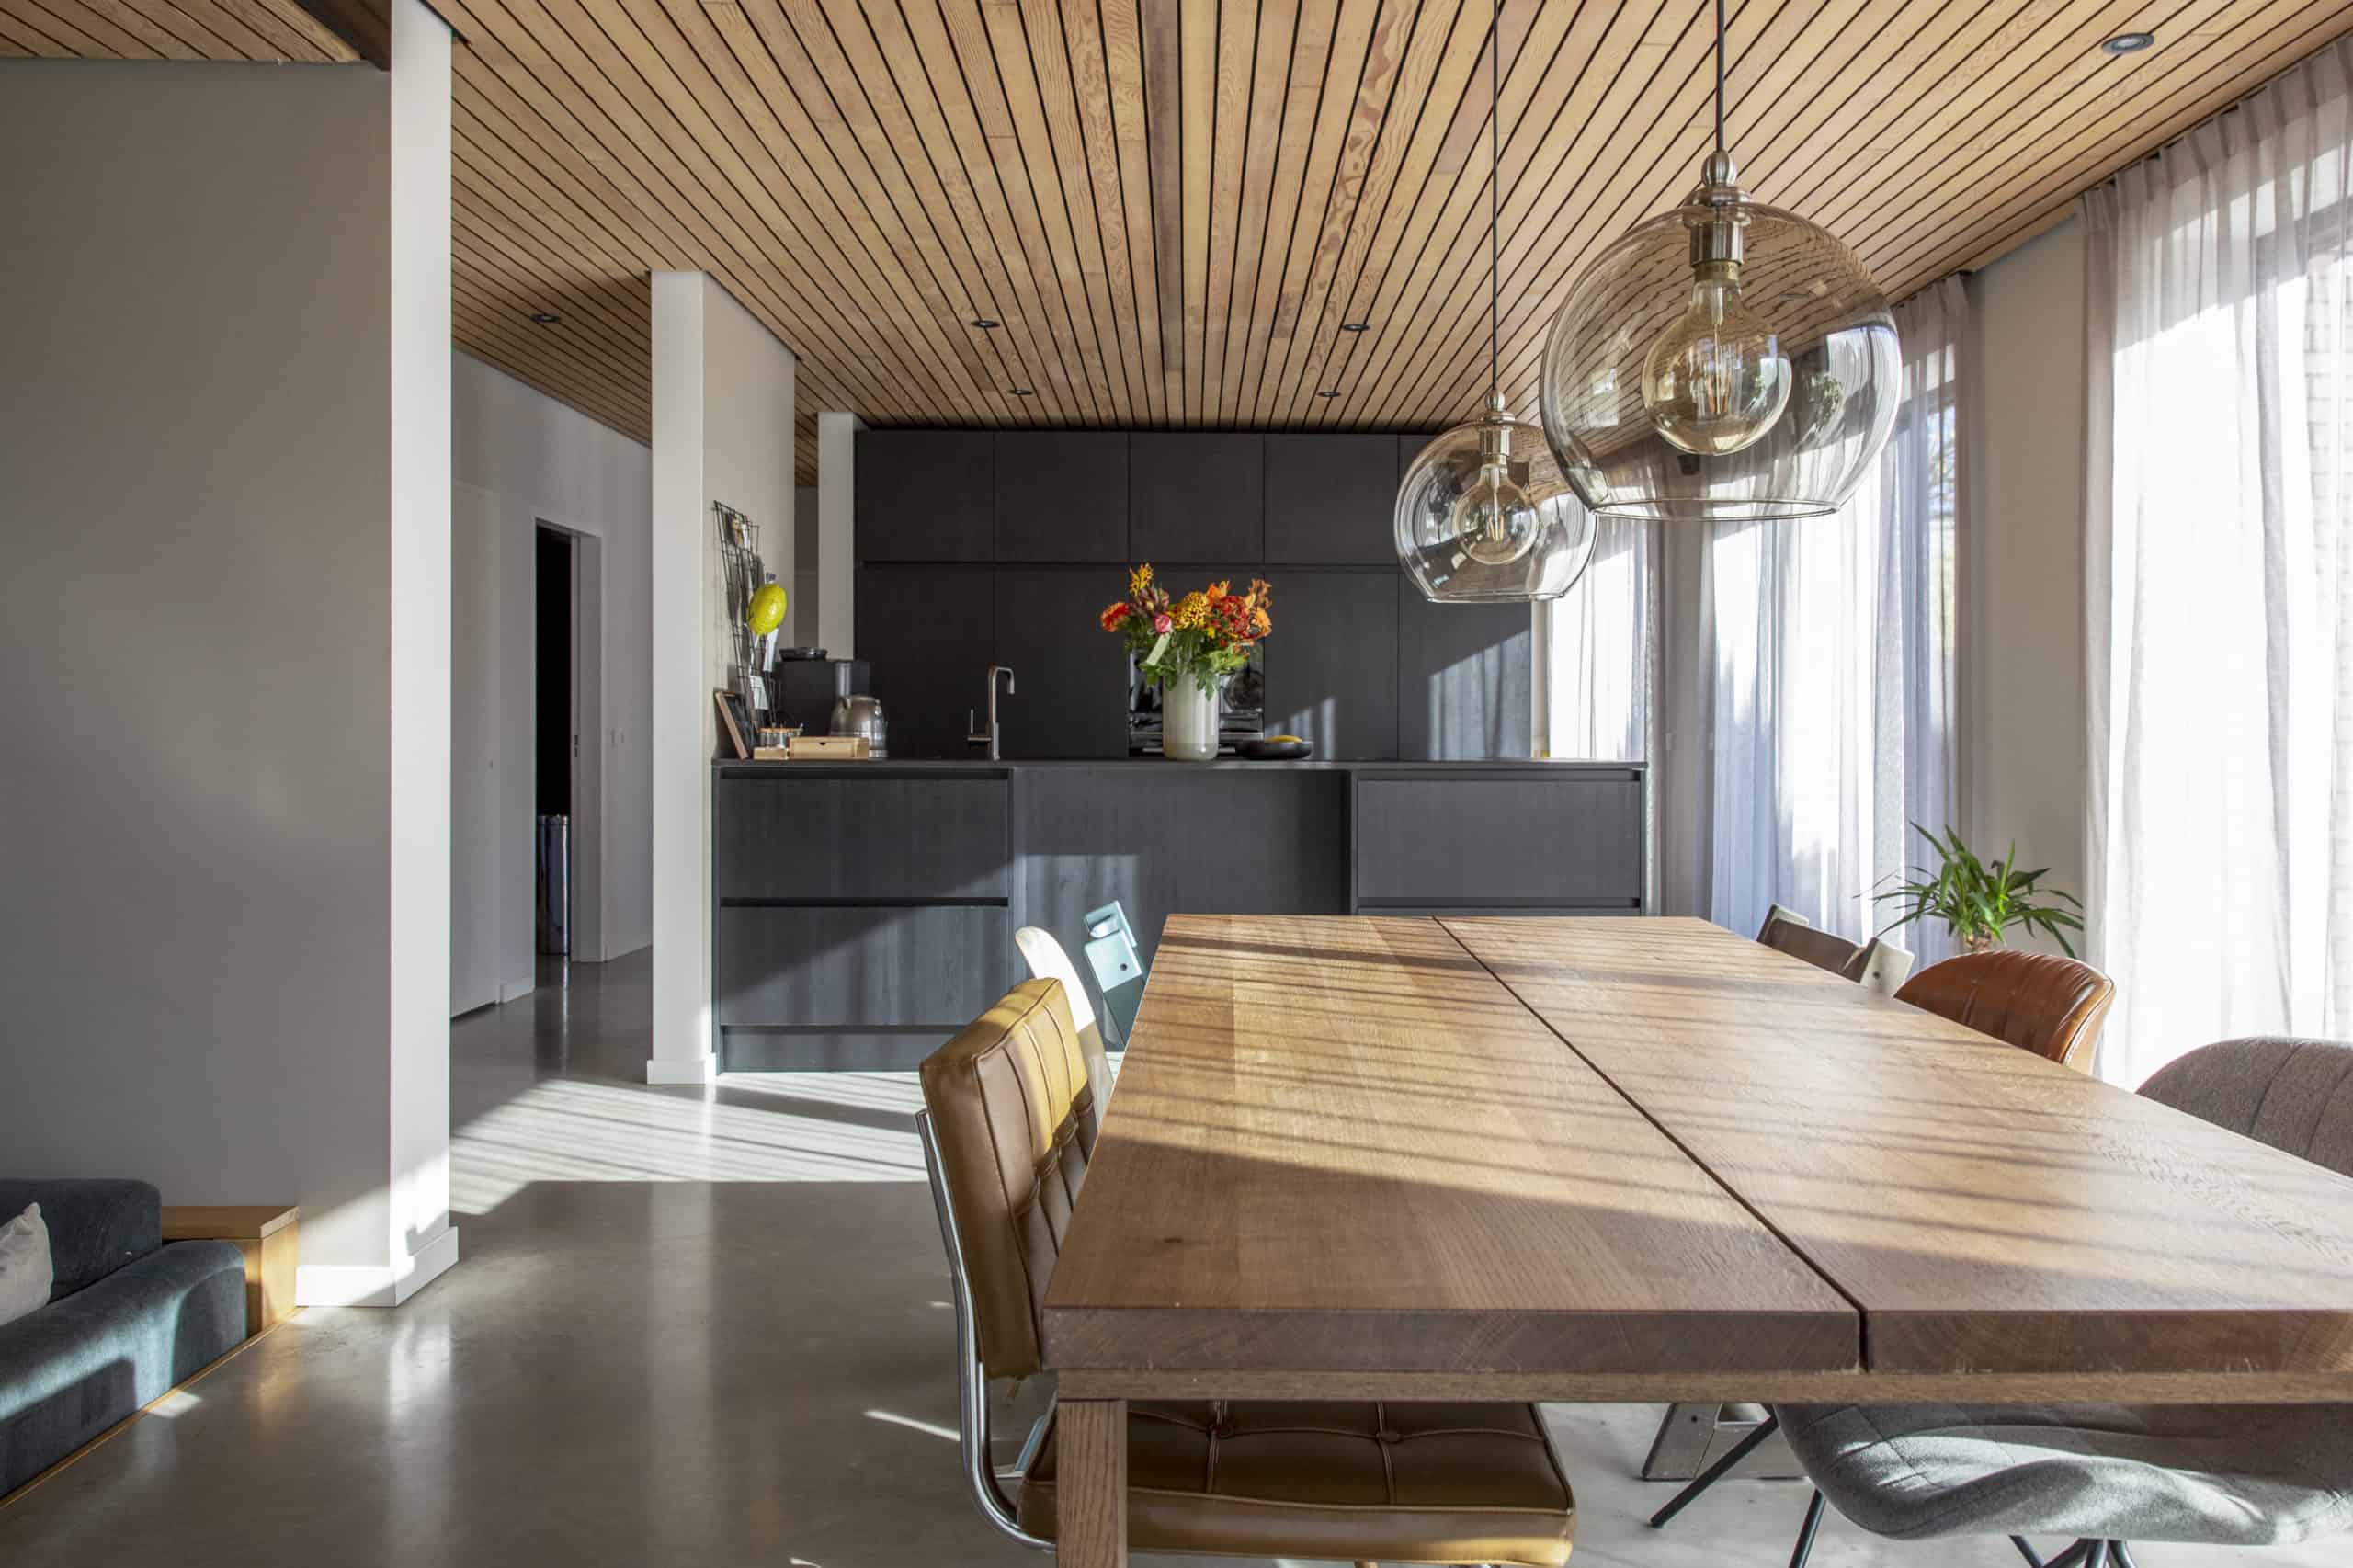 Keuken en eetgedeelte in een woning in Lichtenvoorde met een gevlinderde betonvloer